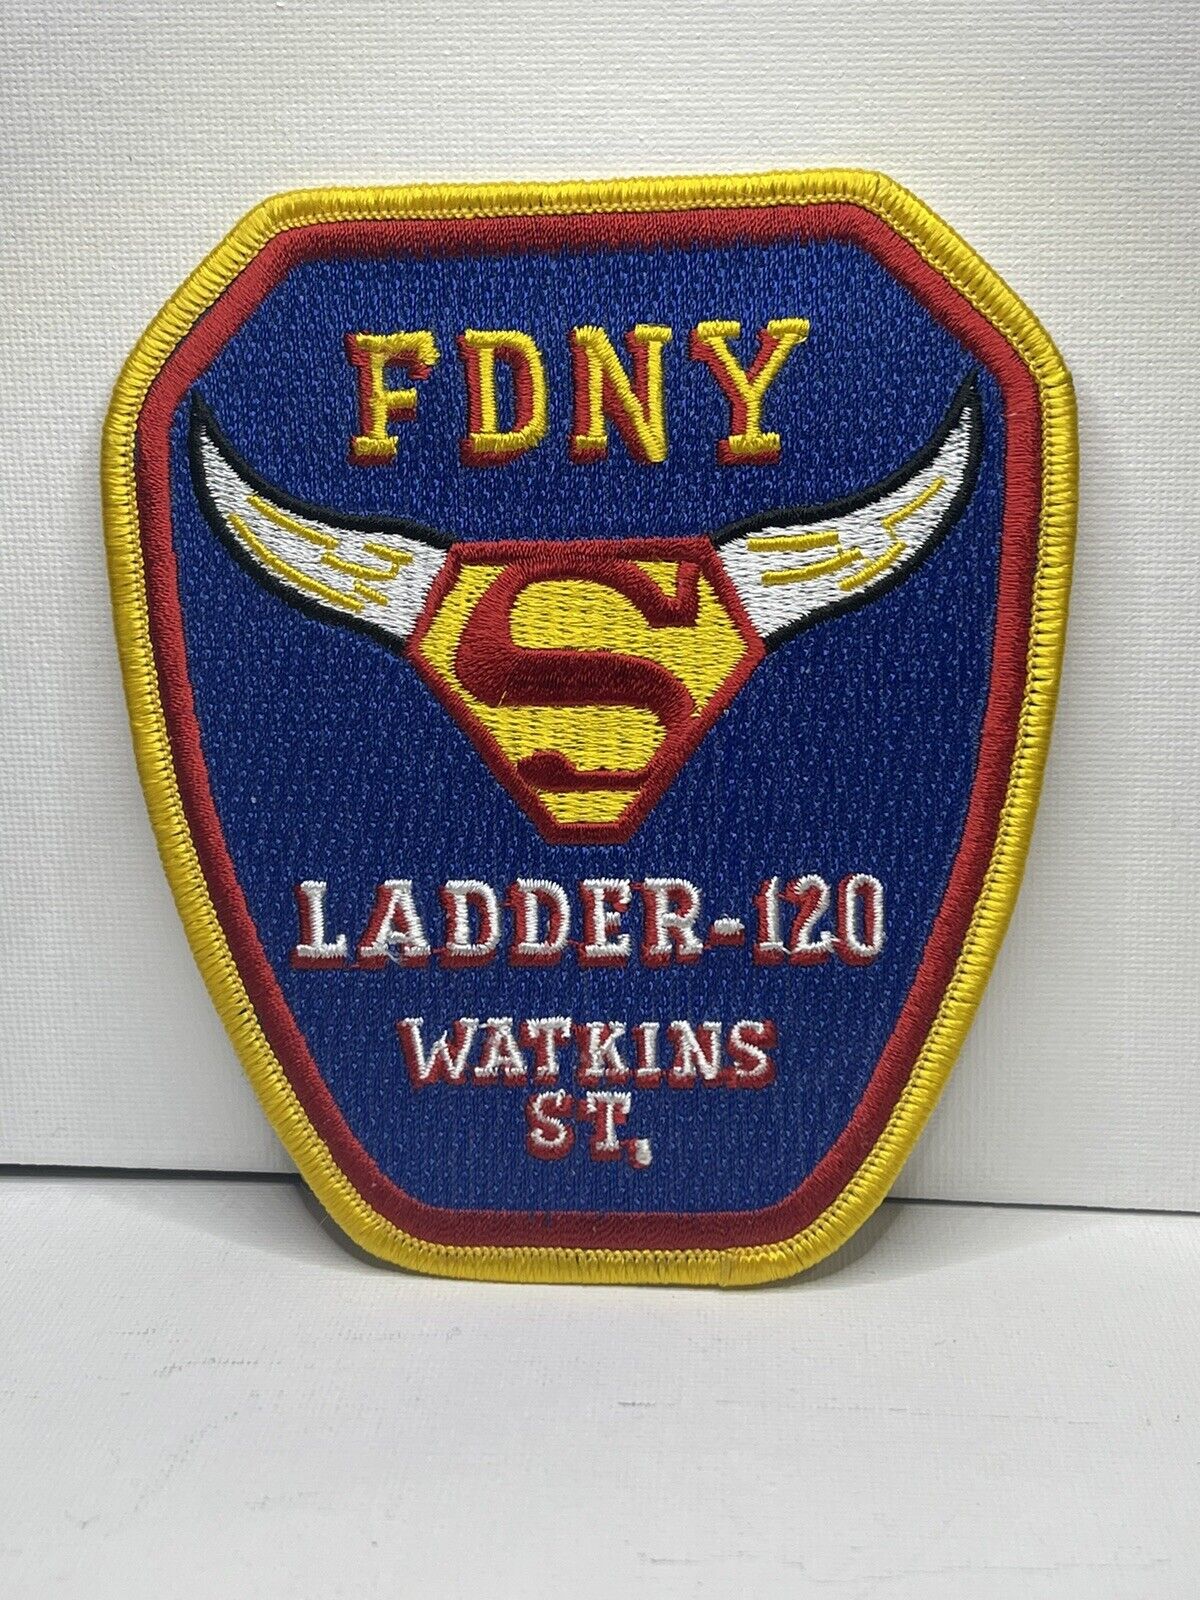 FDNY LADDER 120 WATKINS NEW YORK NY  4 3/4\